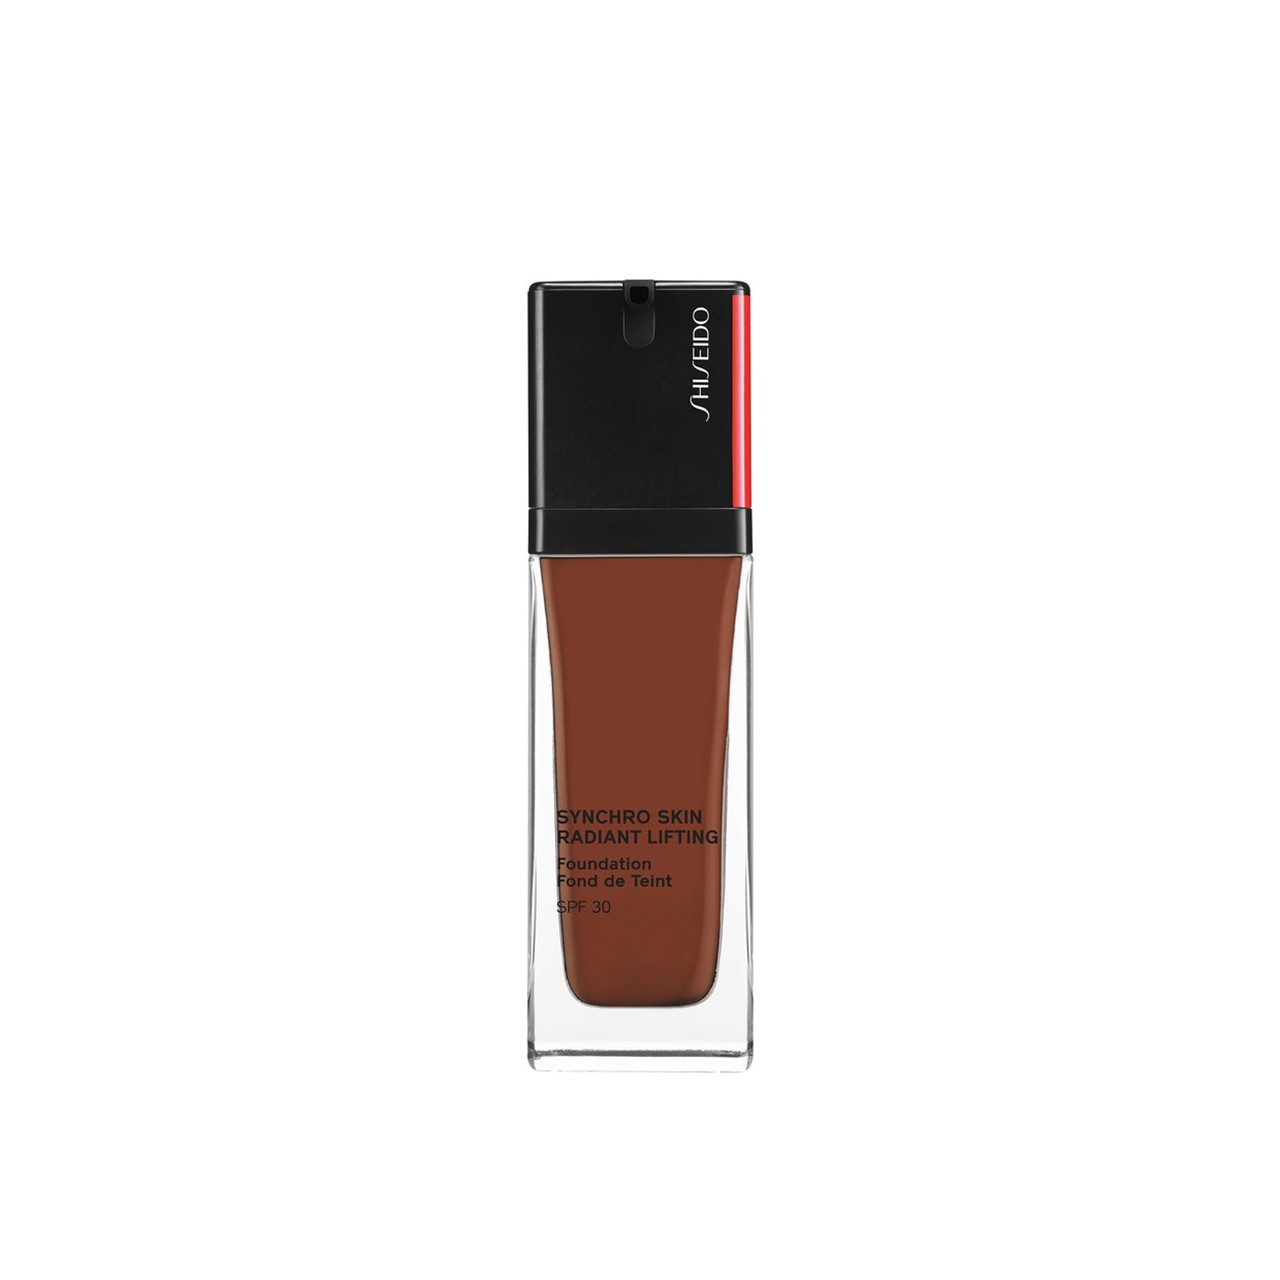 Shiseido Synchro Skin Radiant Lifting Foundation SPF30 550 Jasper 30ml (1.01fl oz)